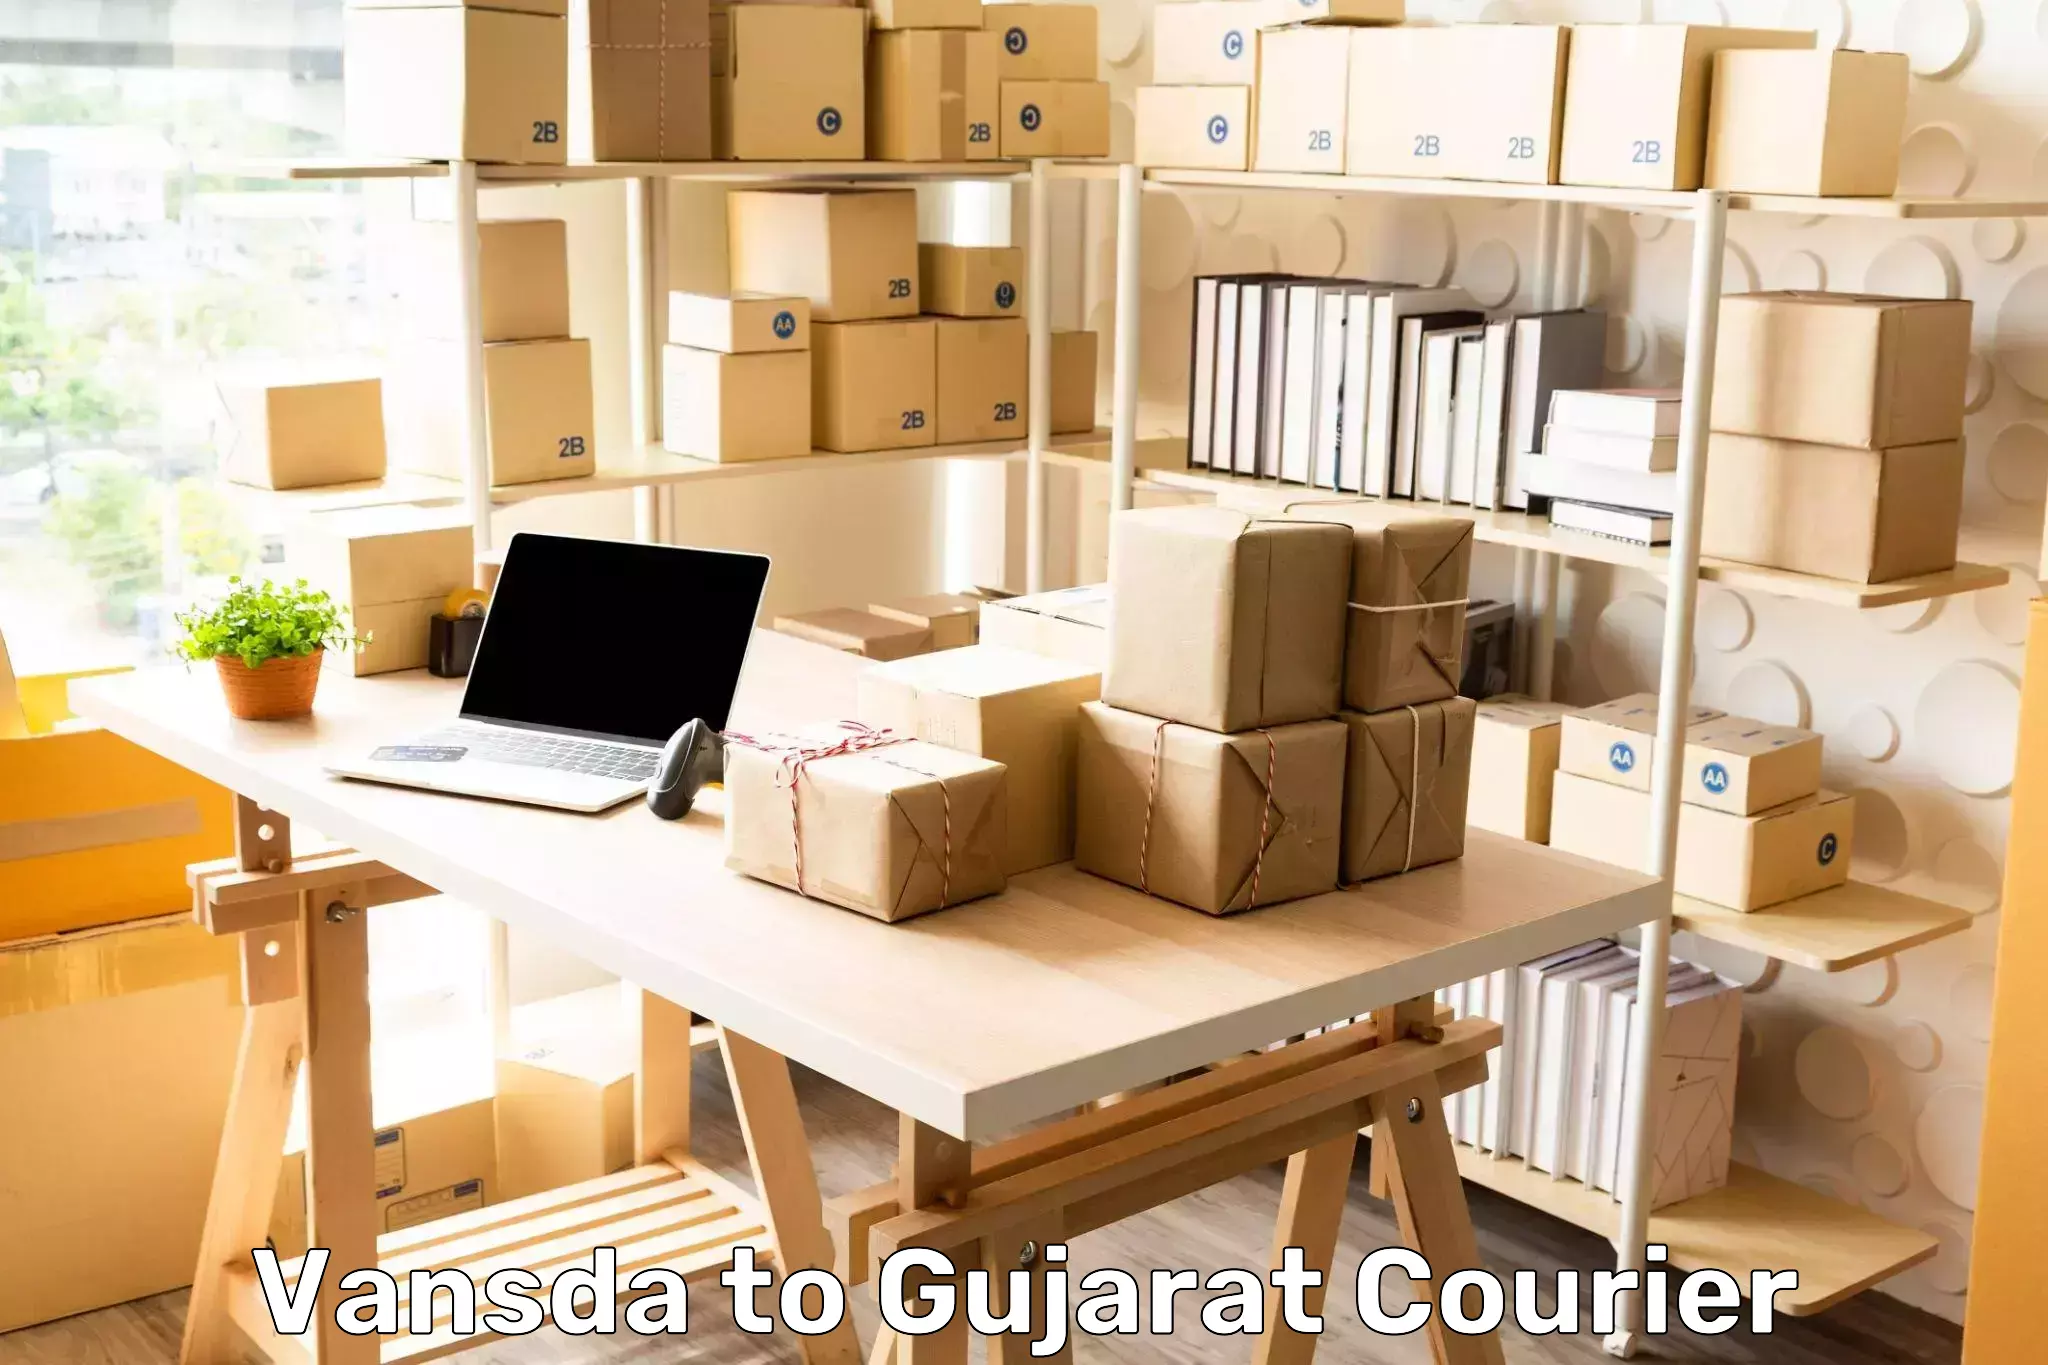 Efficient cargo services Vansda to Gujarat